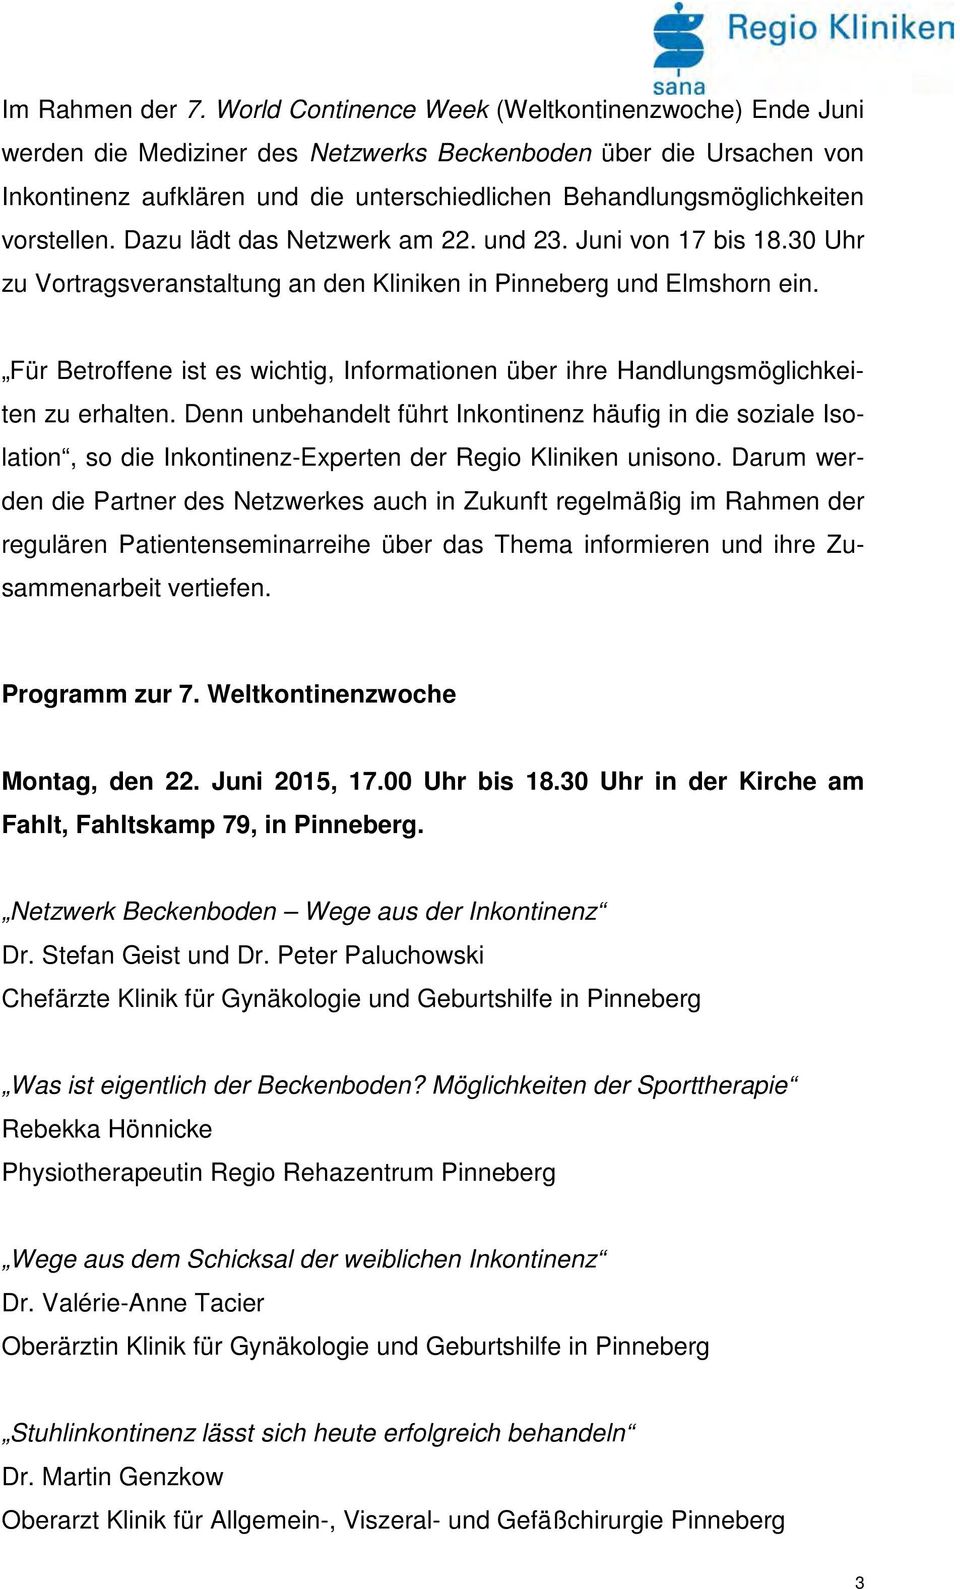 vorstellen. Dazu lädt das Netzwerk am 22. und 23. Juni von 17 bis 18.30 Uhr zu Vortragsveranstaltung an den Kliniken in Pinneberg und Elmshorn ein.